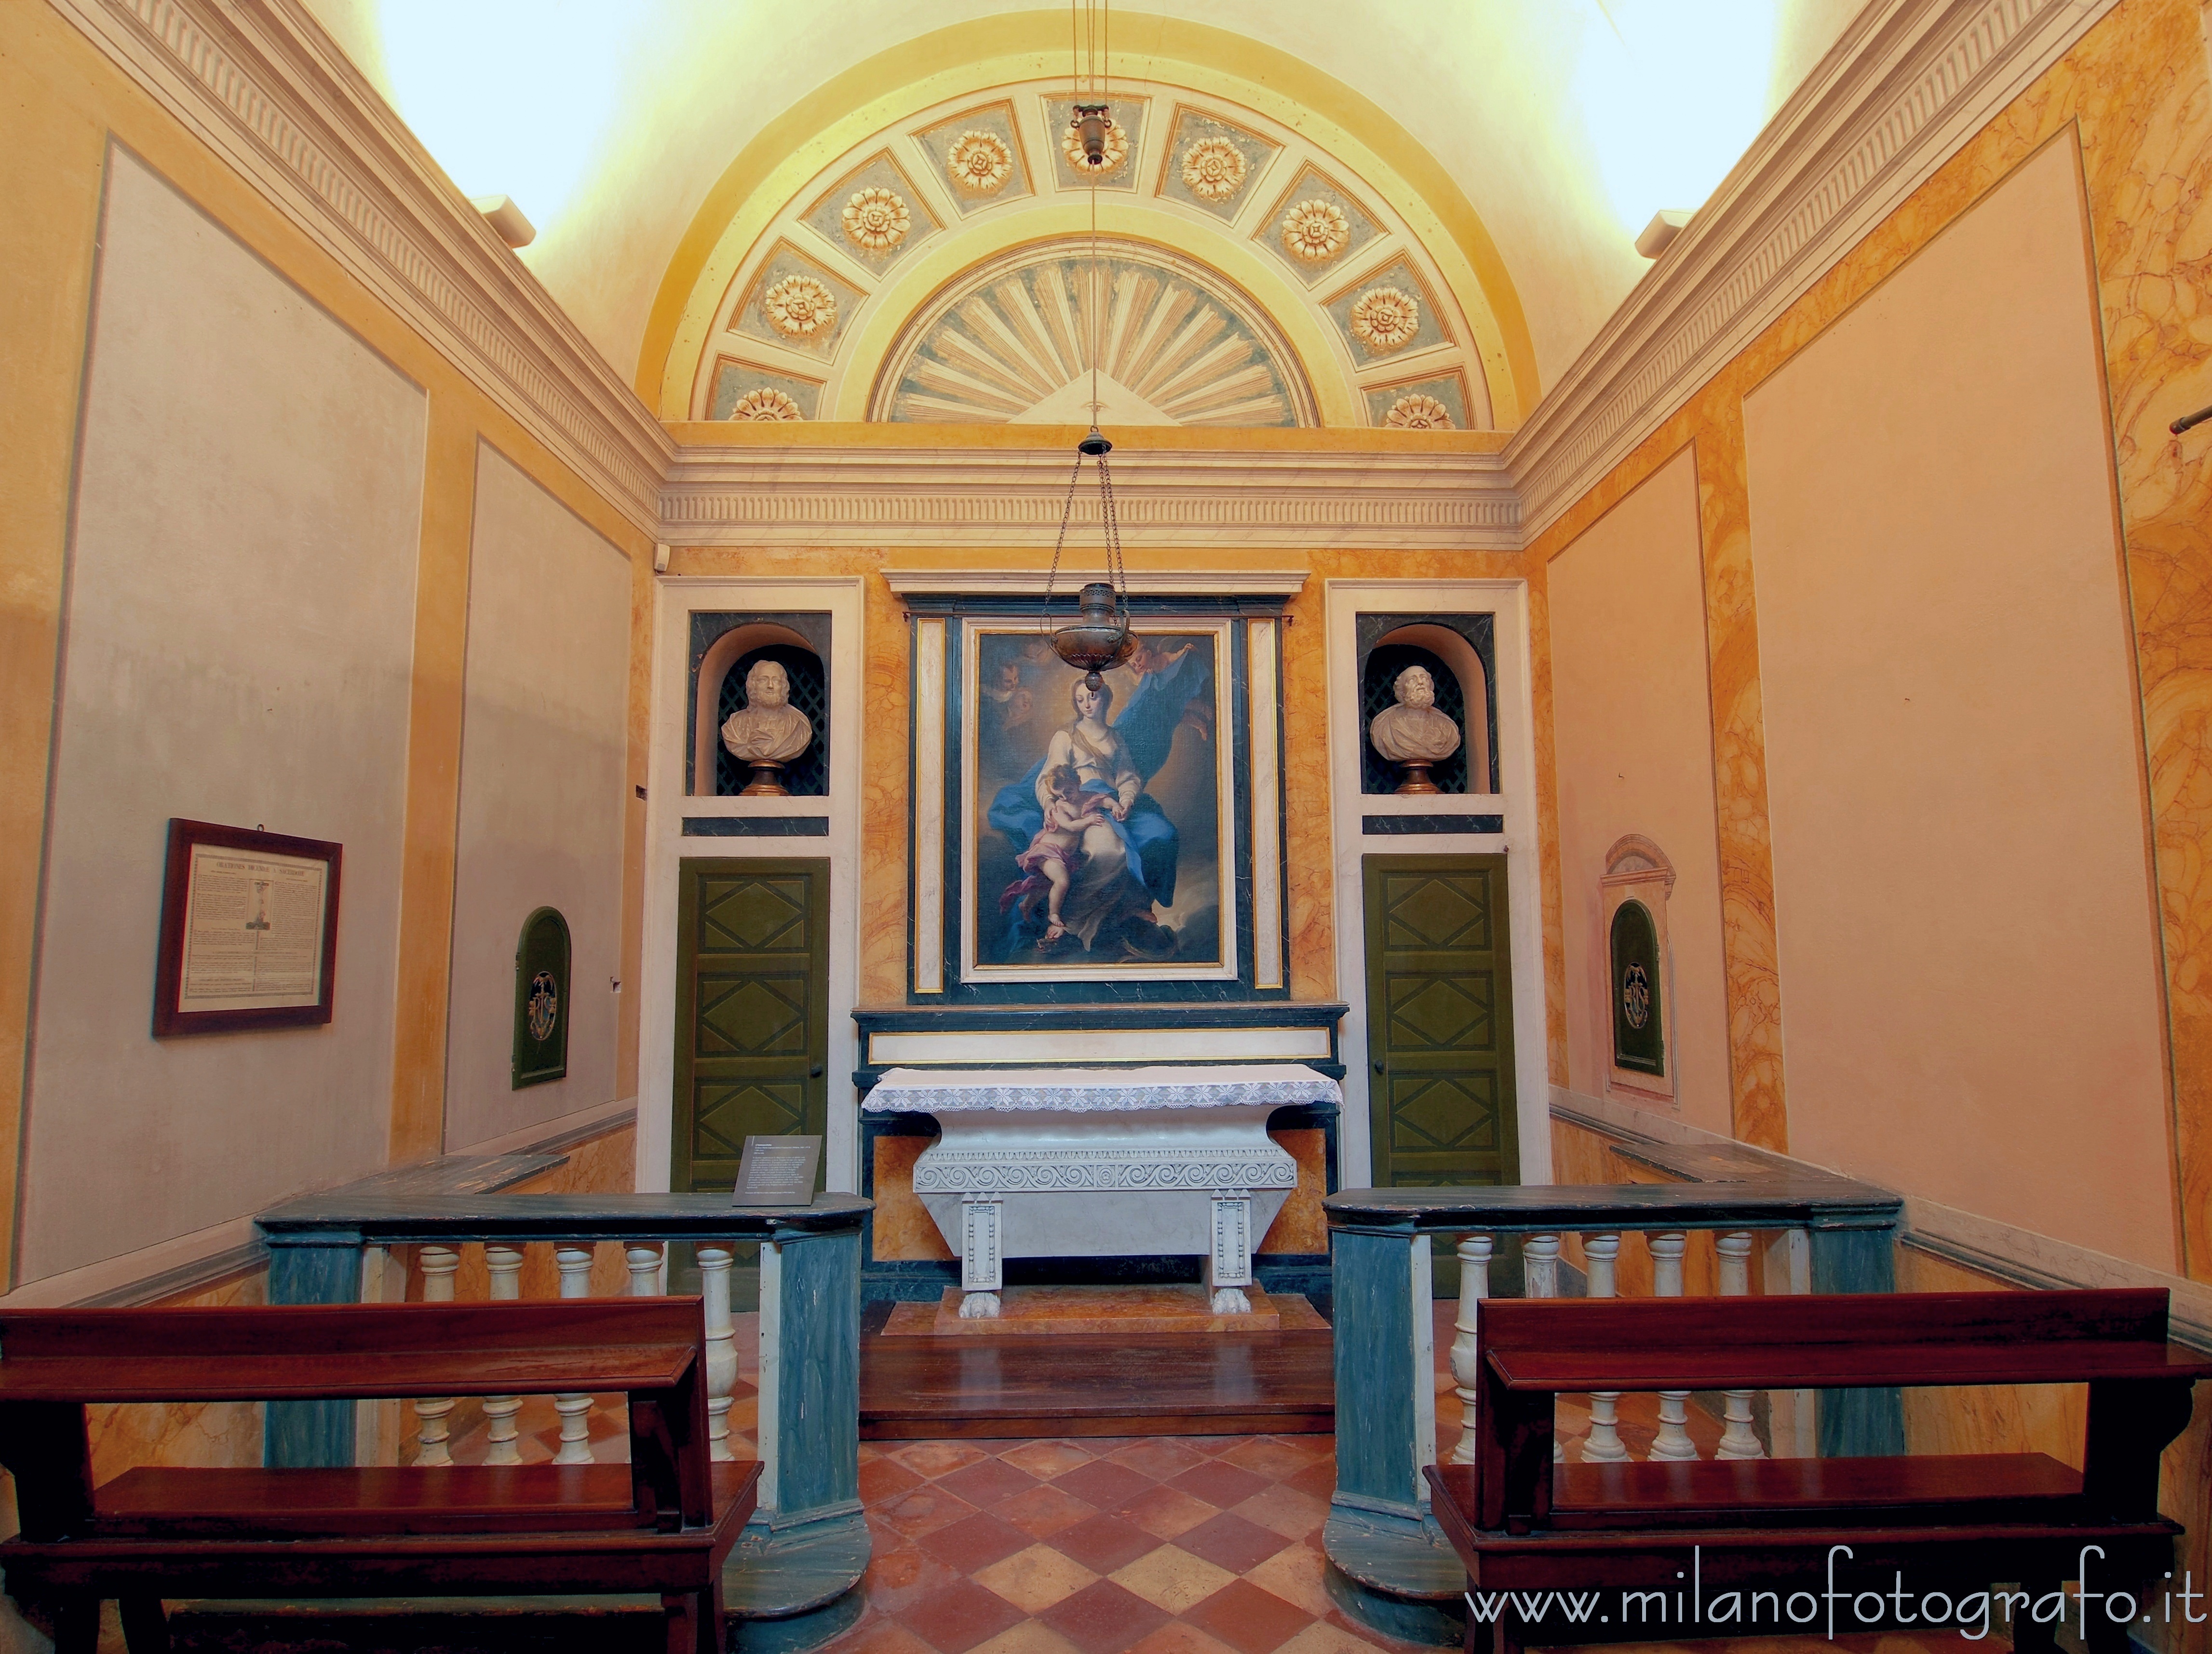 Vimercate (Monza e Brianza, Italy): Private chapel of Villa Sottocasa - Vimercate (Monza e Brianza, Italy)